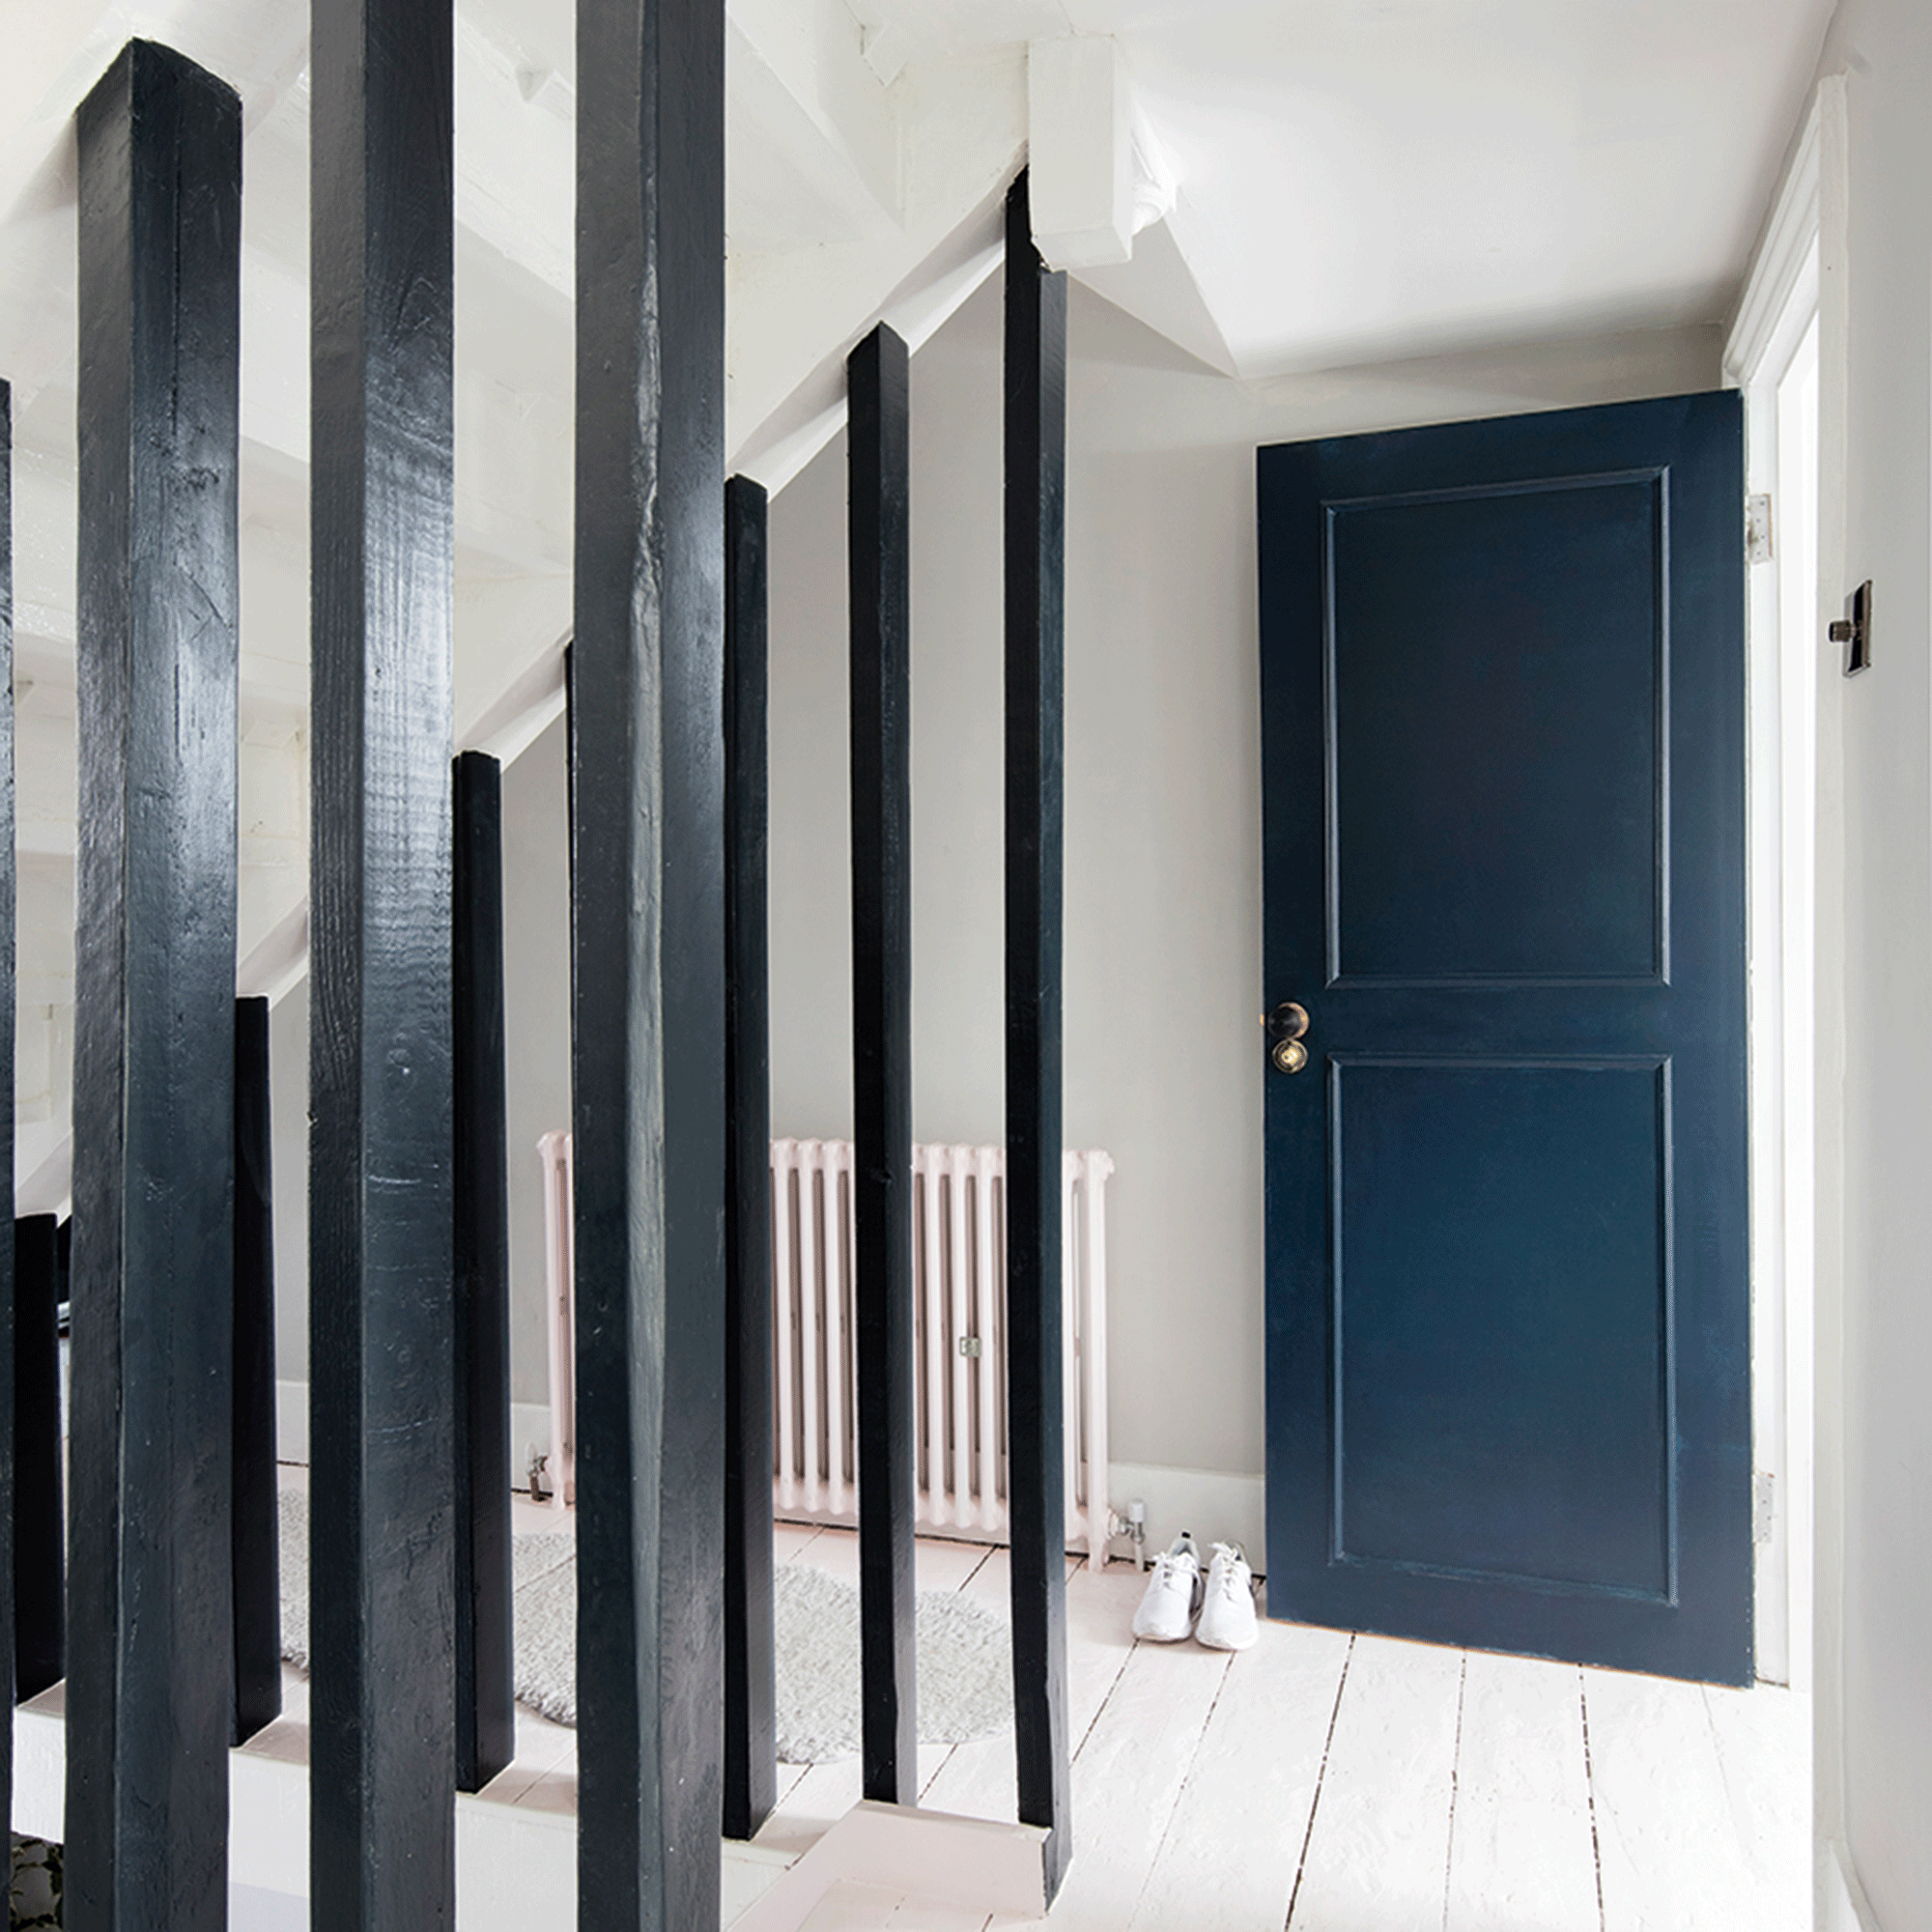 Blue door in white hallway with black panels